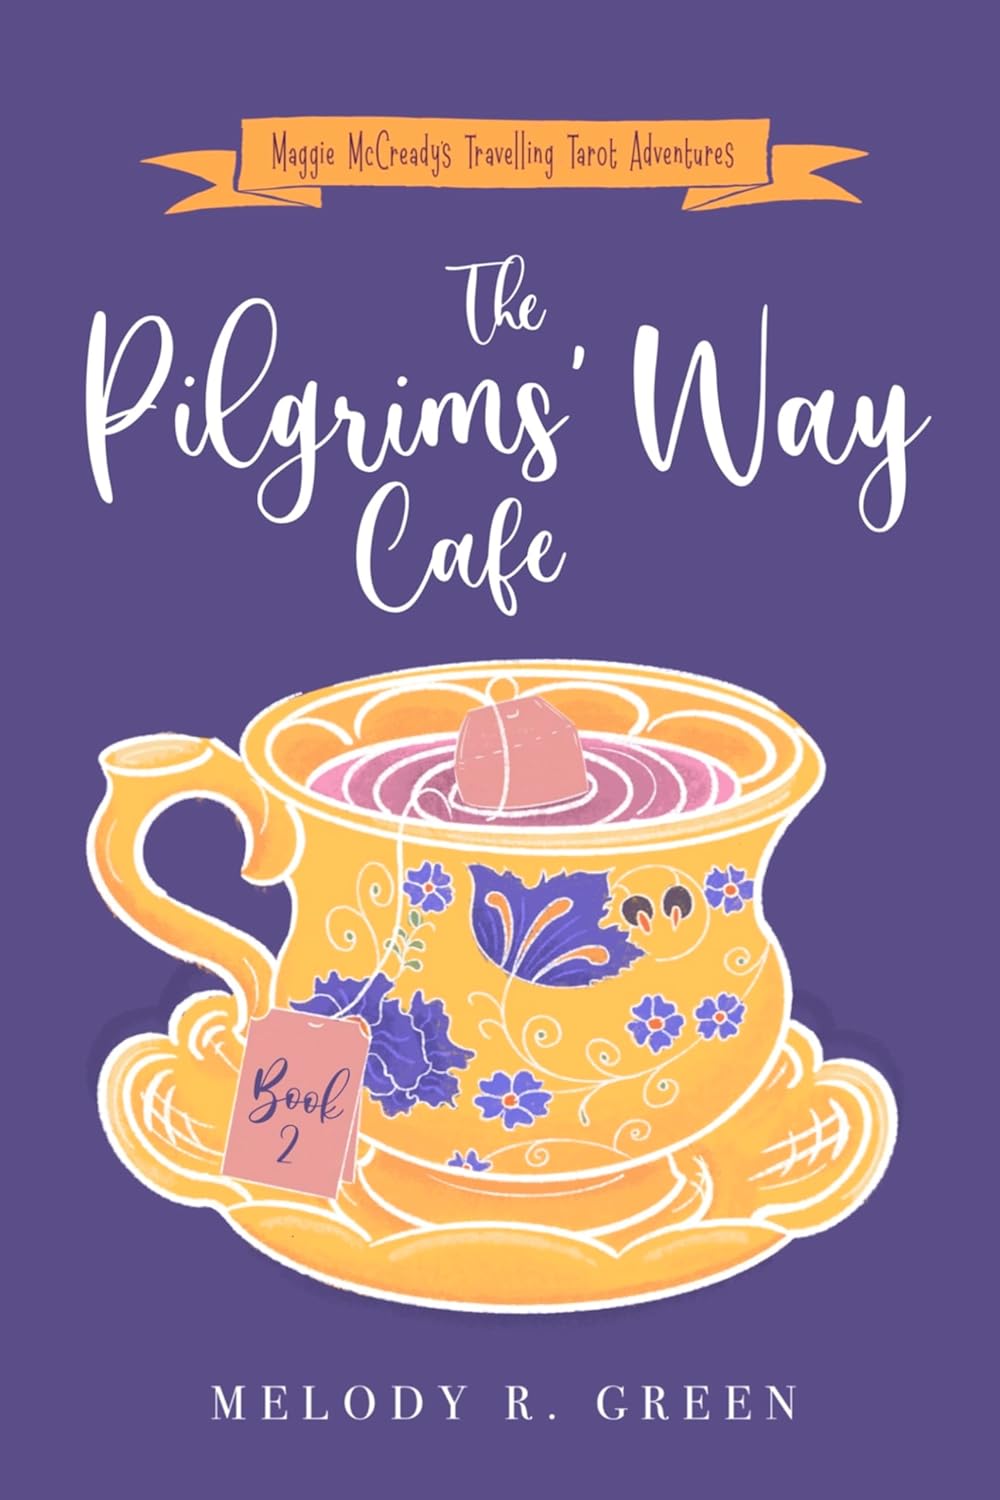 The Pilgrims’ Way Cafe